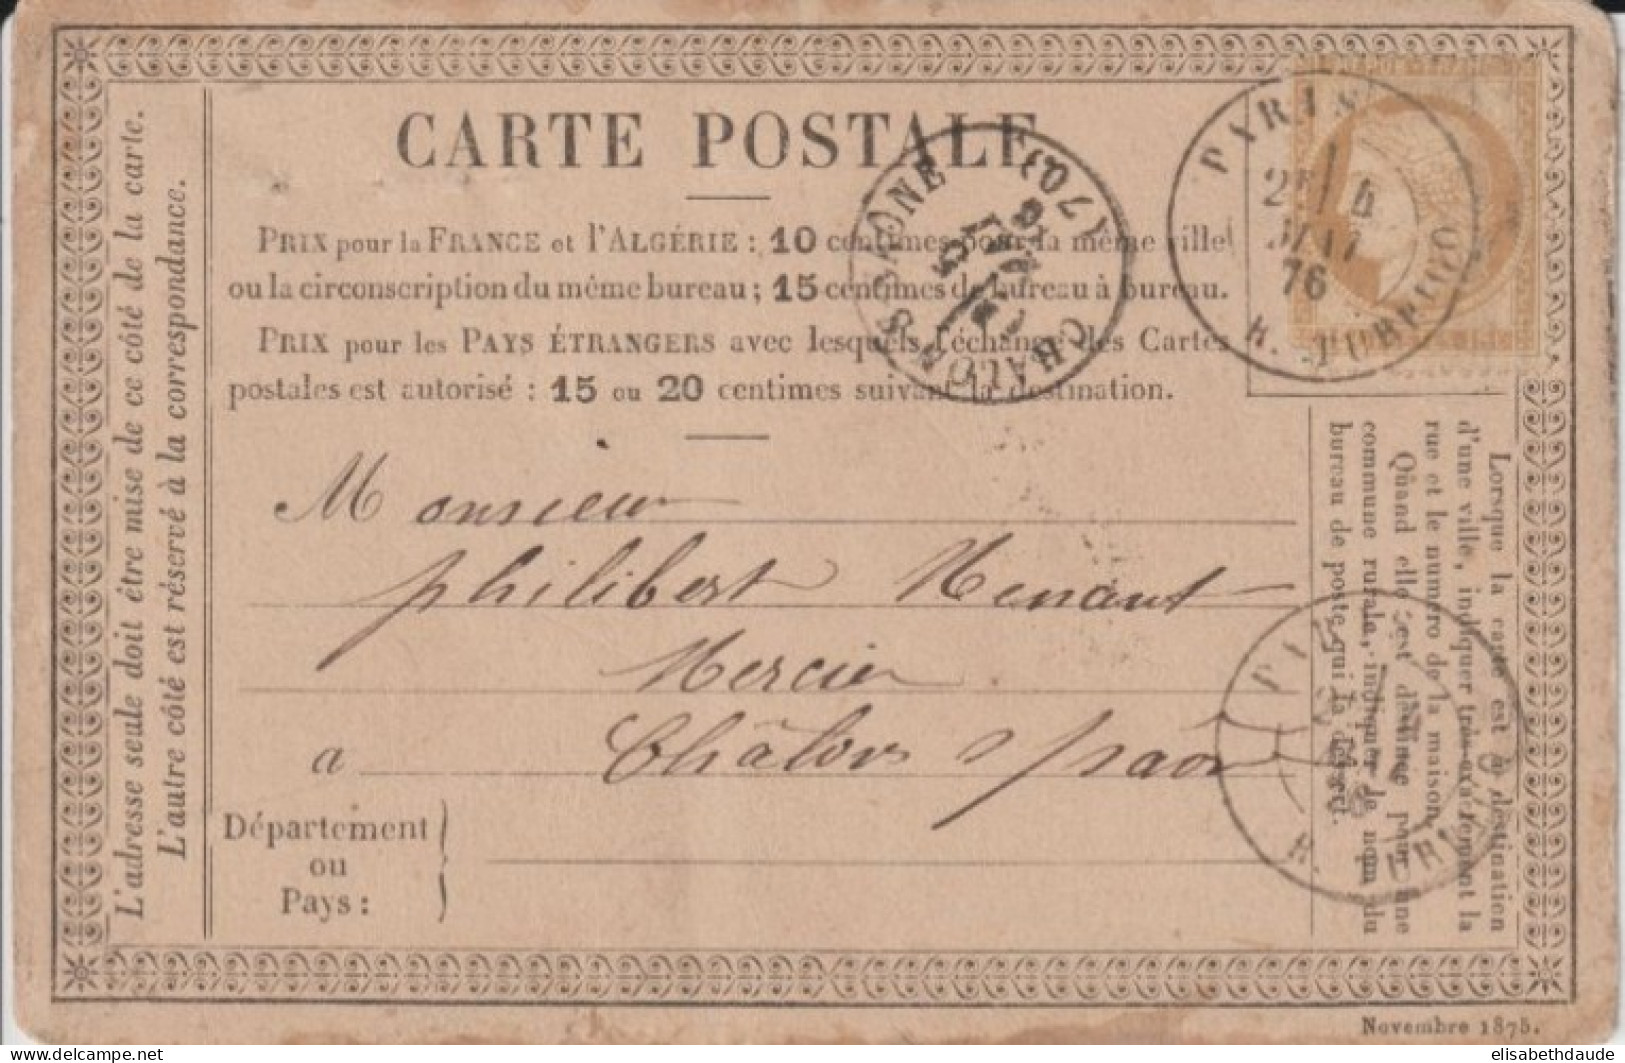 1876 - CP PRECURSEUR ENTIER CERES Avec REPIQUAGE PRIVE ! (PASSEMENTERIE ET BOUTONS JUMEL) De PARIS - Cartoline Precursori